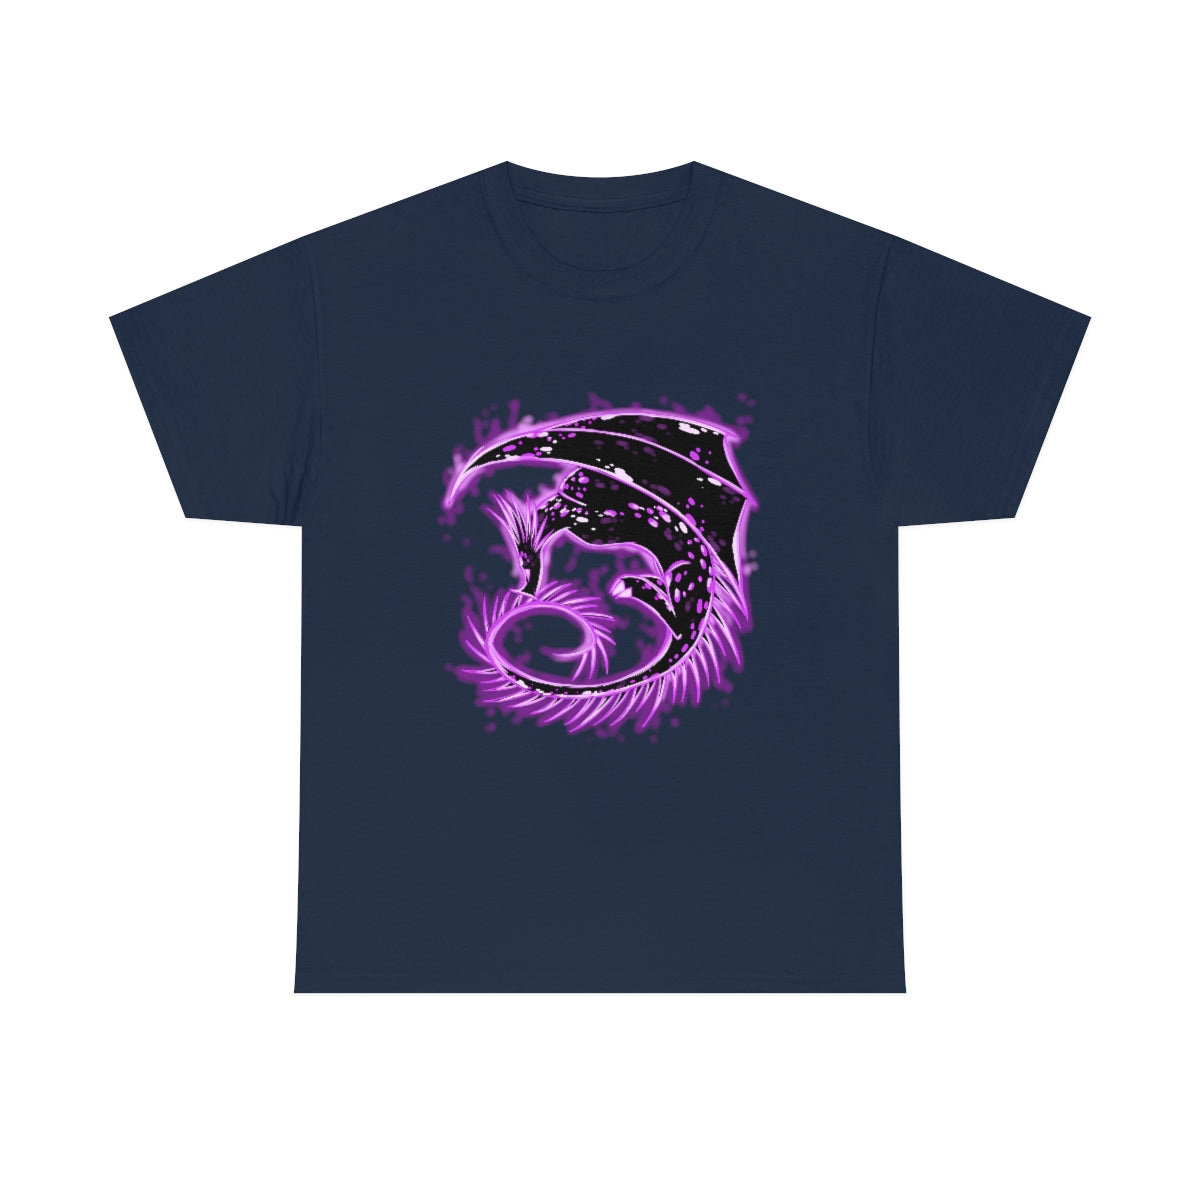 Violet Dragon - T-Shirt T-Shirt Dire Creatures Navy Blue S 